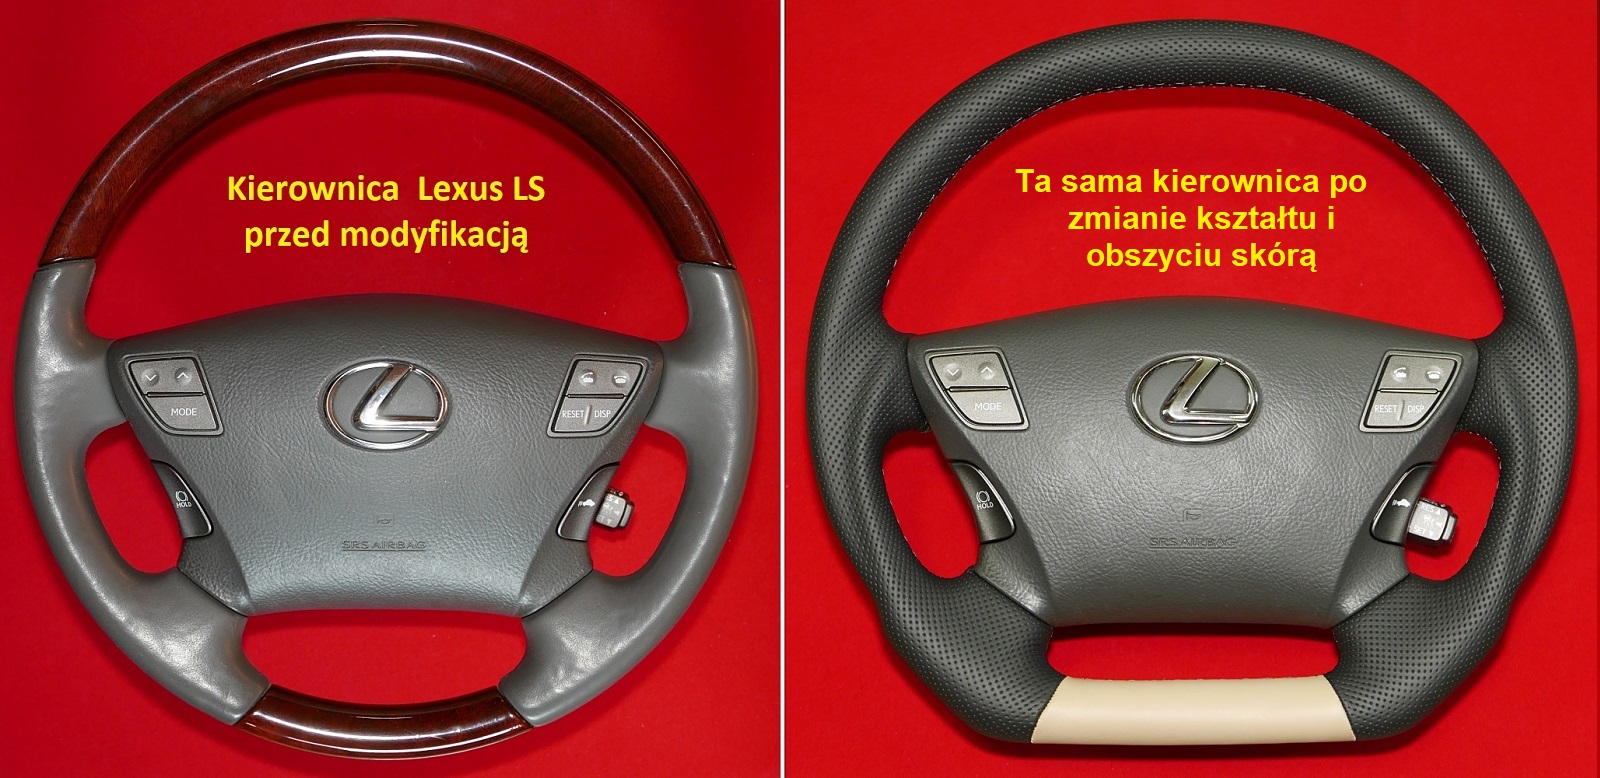 przebudowa zmiana kształtu modyfikacja kierownica lexus